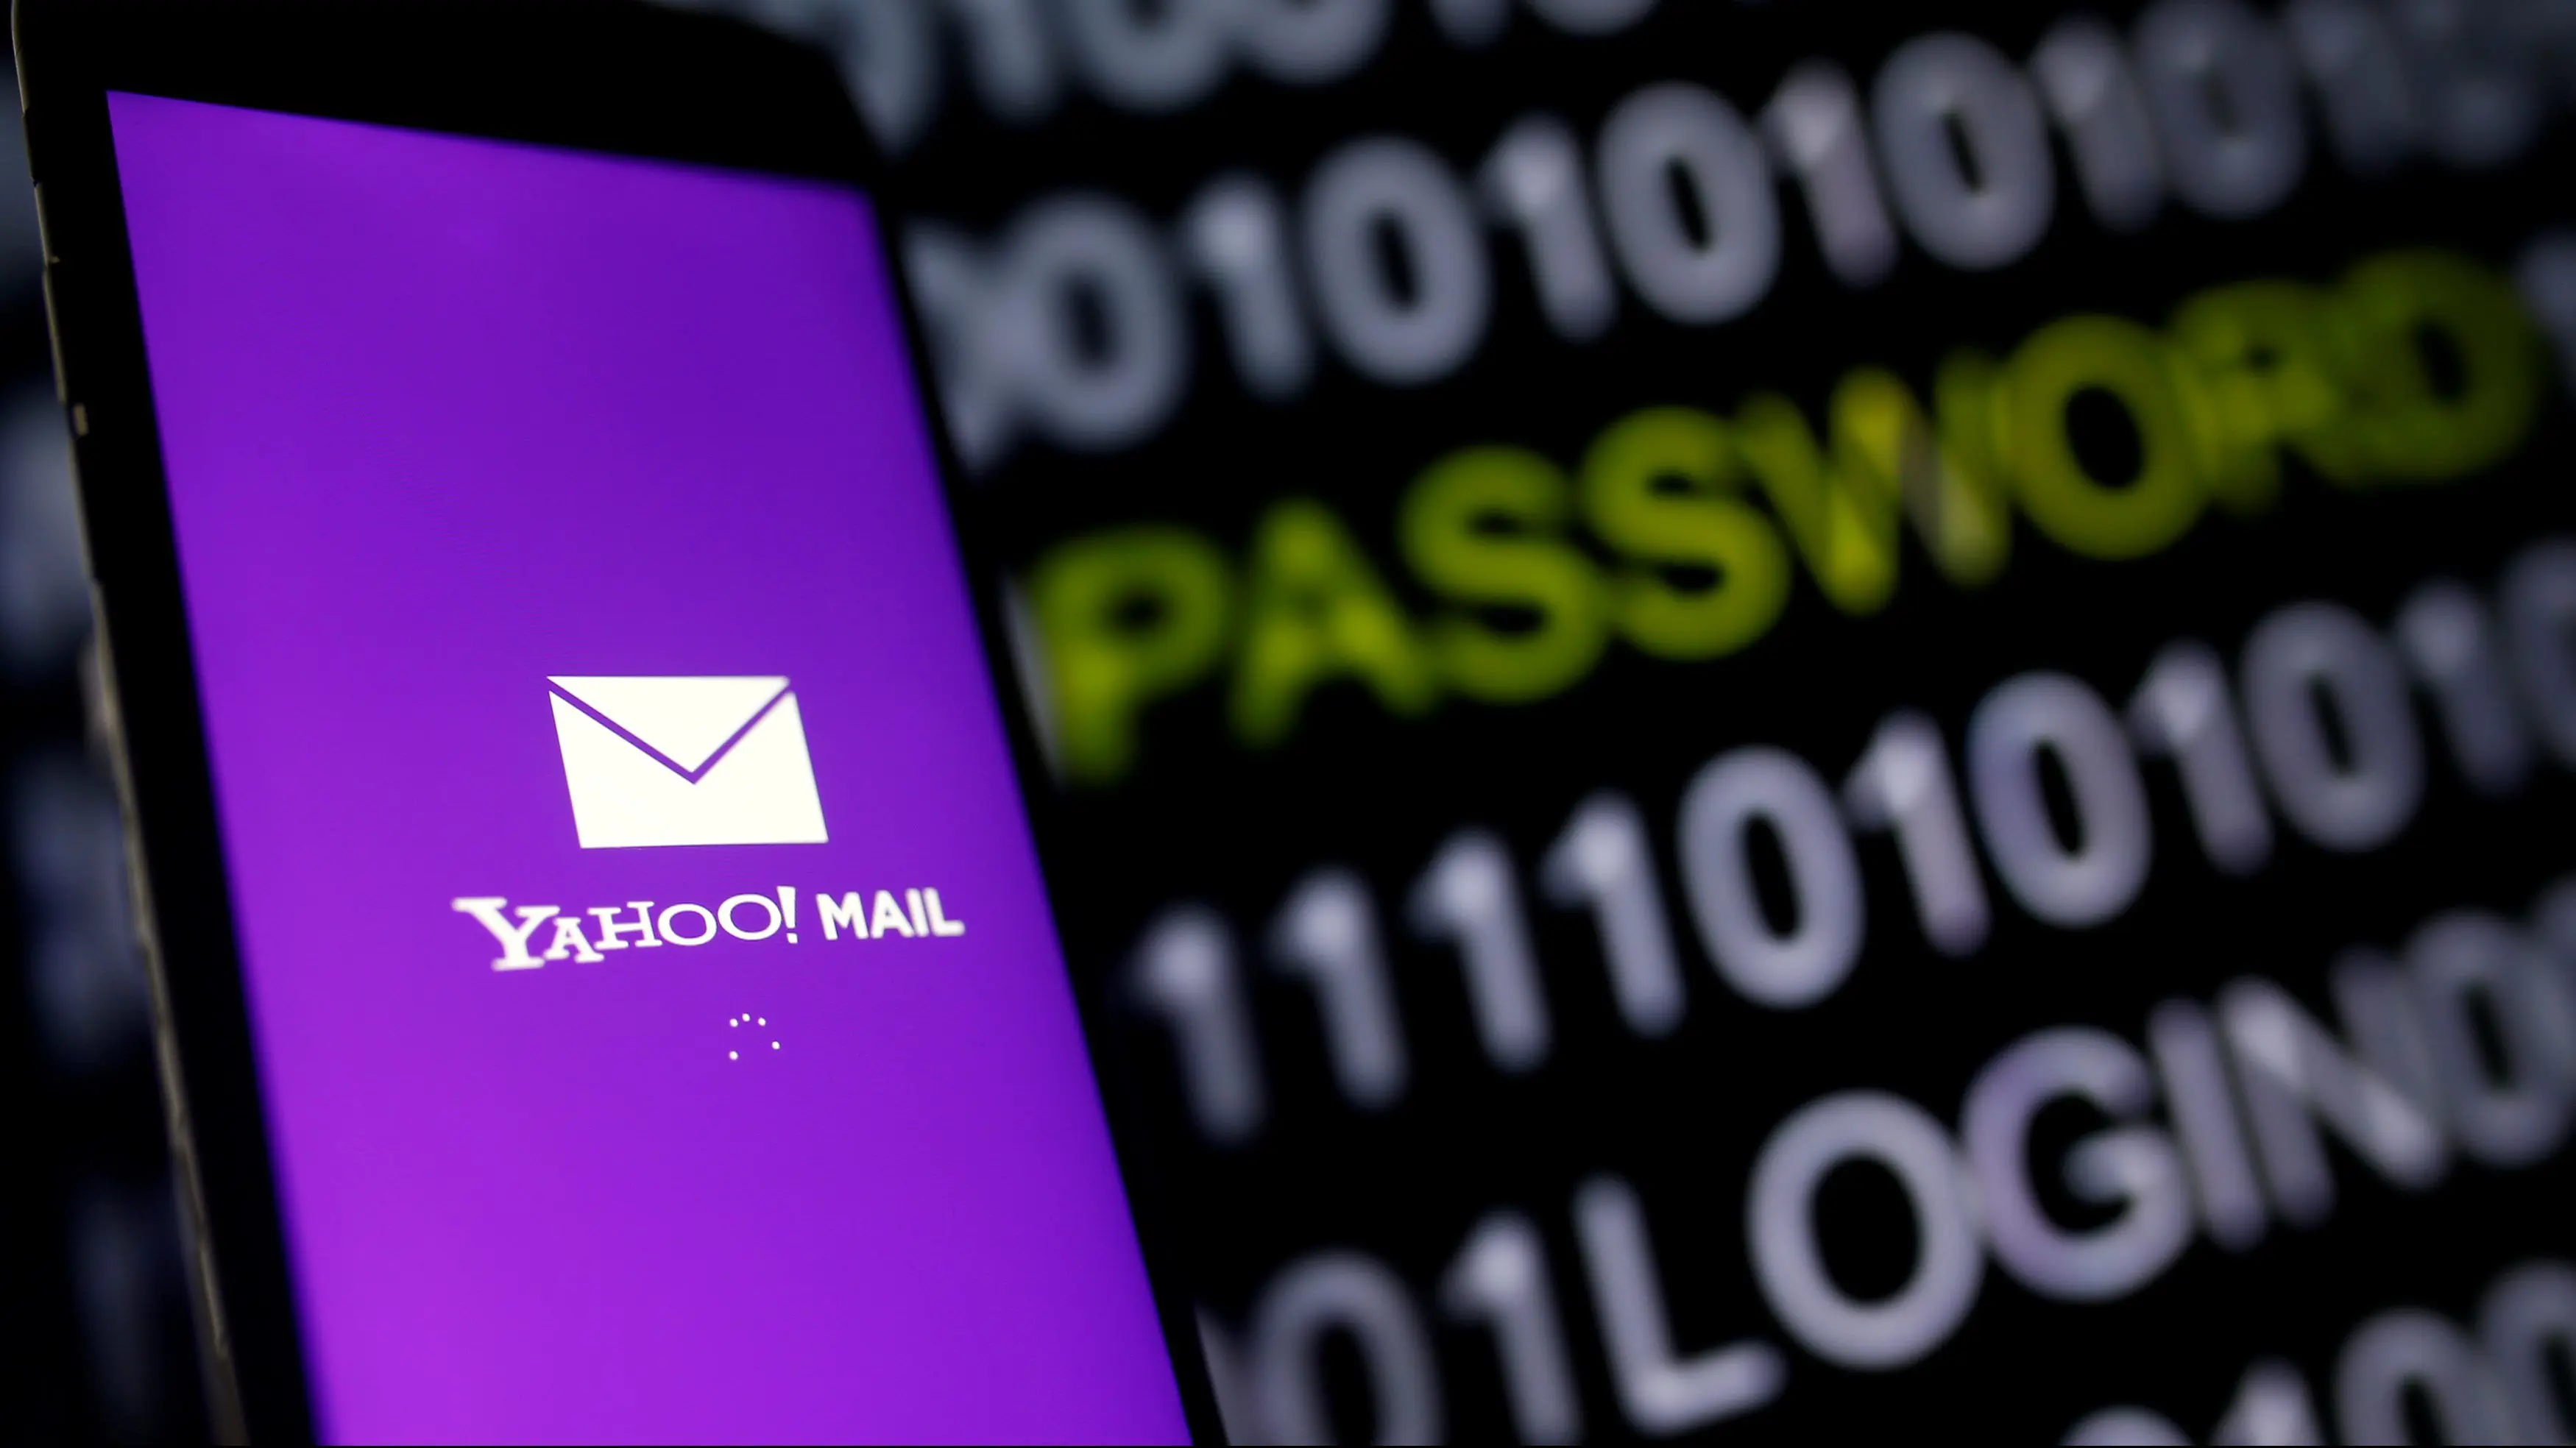 Hackearon 3,000 millones de cuentas de Yahoo Mail en 2013